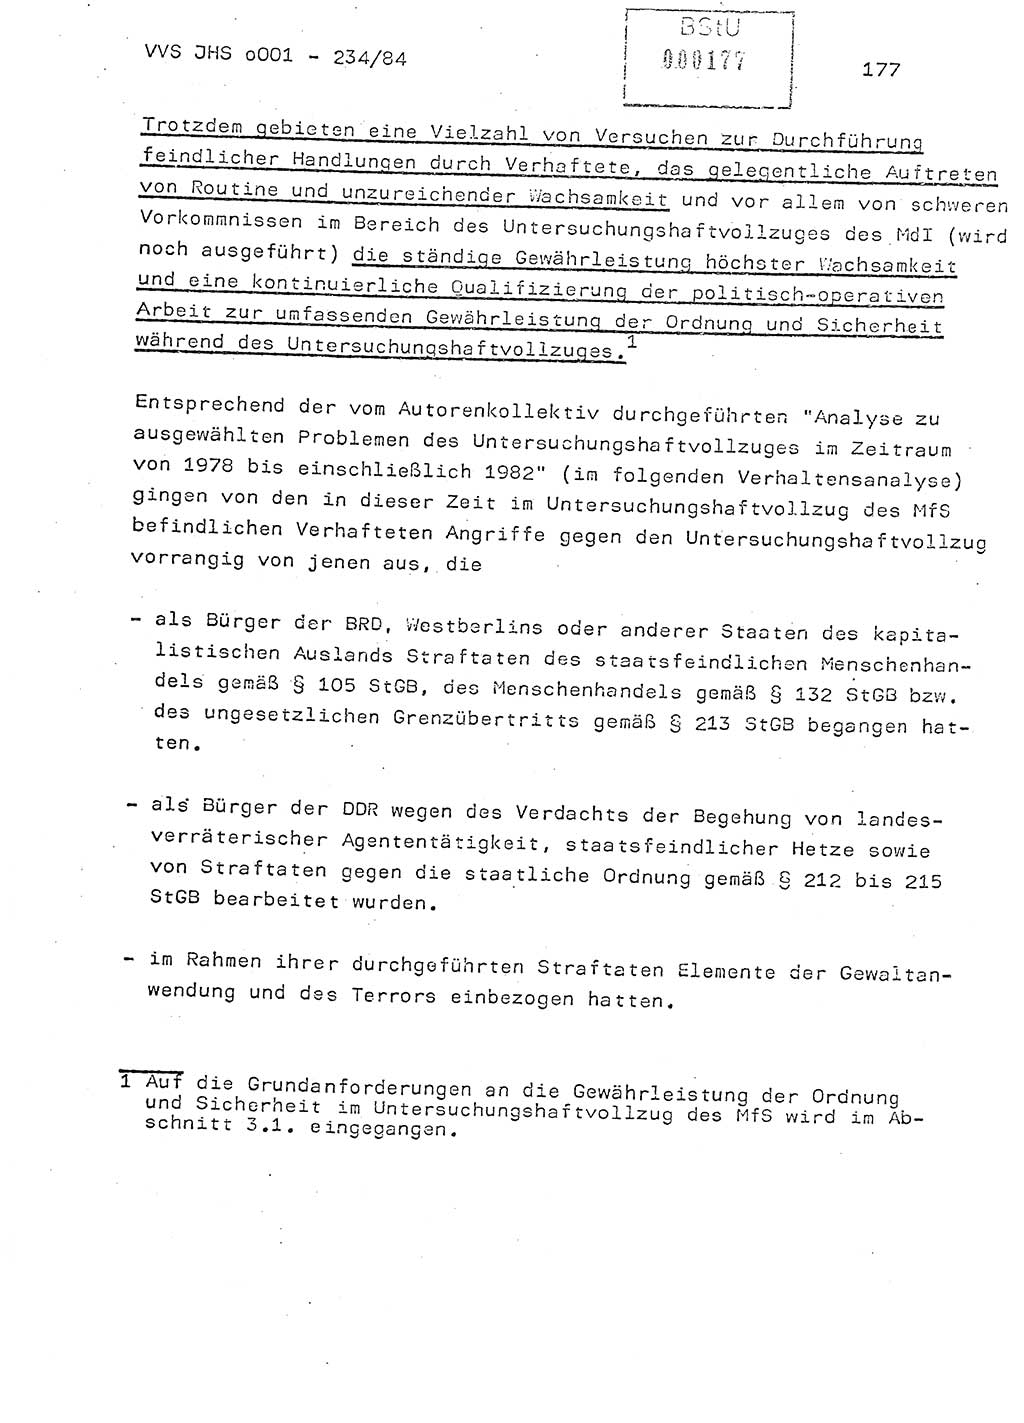 Dissertation Oberst Siegfried Rataizick (Abt. ⅩⅣ), Oberstleutnant Volkmar Heinz (Abt. ⅩⅣ), Oberstleutnant Werner Stein (HA Ⅸ), Hauptmann Heinz Conrad (JHS), Ministerium für Staatssicherheit (MfS) [Deutsche Demokratische Republik (DDR)], Juristische Hochschule (JHS), Vertrauliche Verschlußsache (VVS) o001-234/84, Potsdam 1984, Seite 177 (Diss. MfS DDR JHS VVS o001-234/84 1984, S. 177)